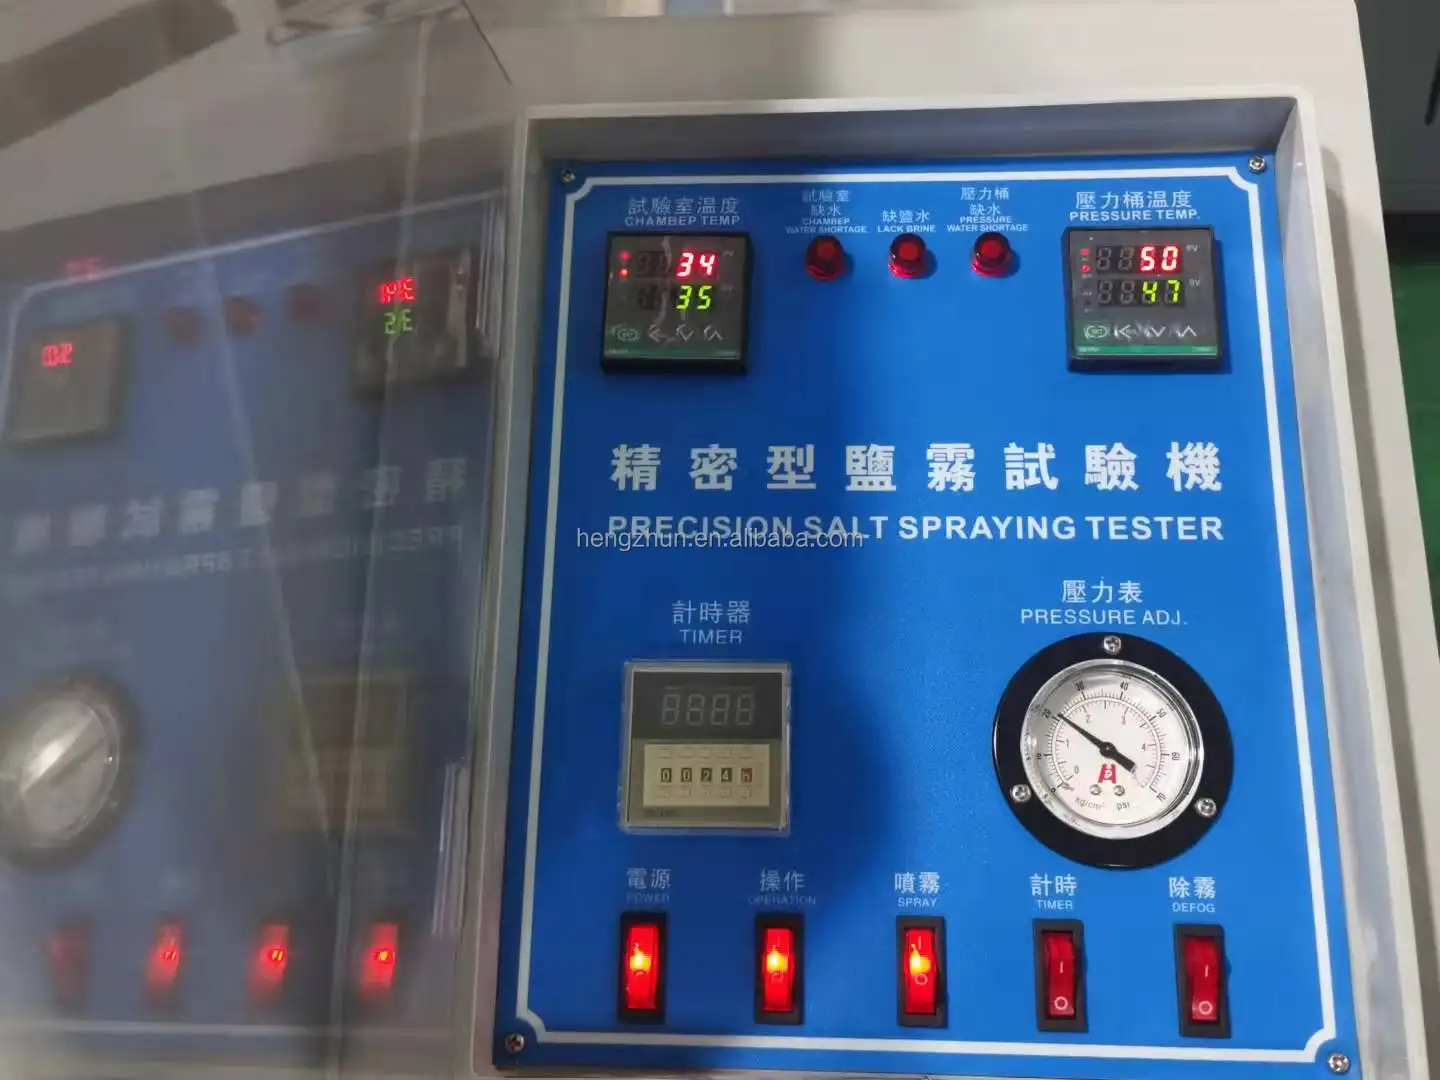 CNS.4158 tuz püskürtme testi standart programlanabilir 108L/270L/480L yeni korozyon test makinesi tuz püskürtme odası